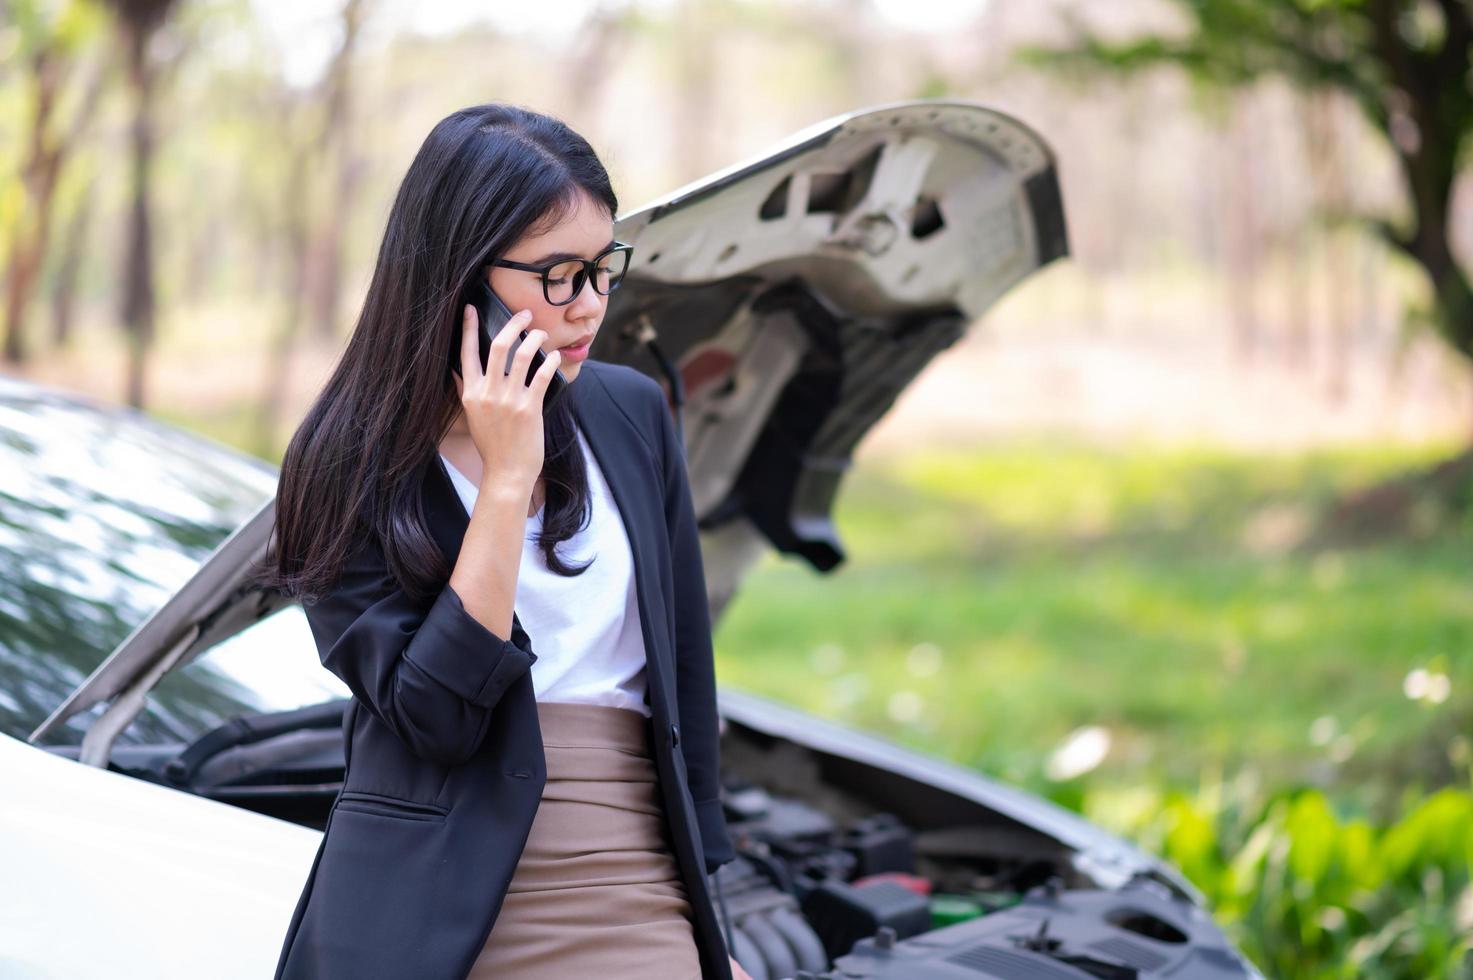 une jeune femme asiatique appelle son technicien de service pour réparer une voiture cassée sur le bord de la route photo